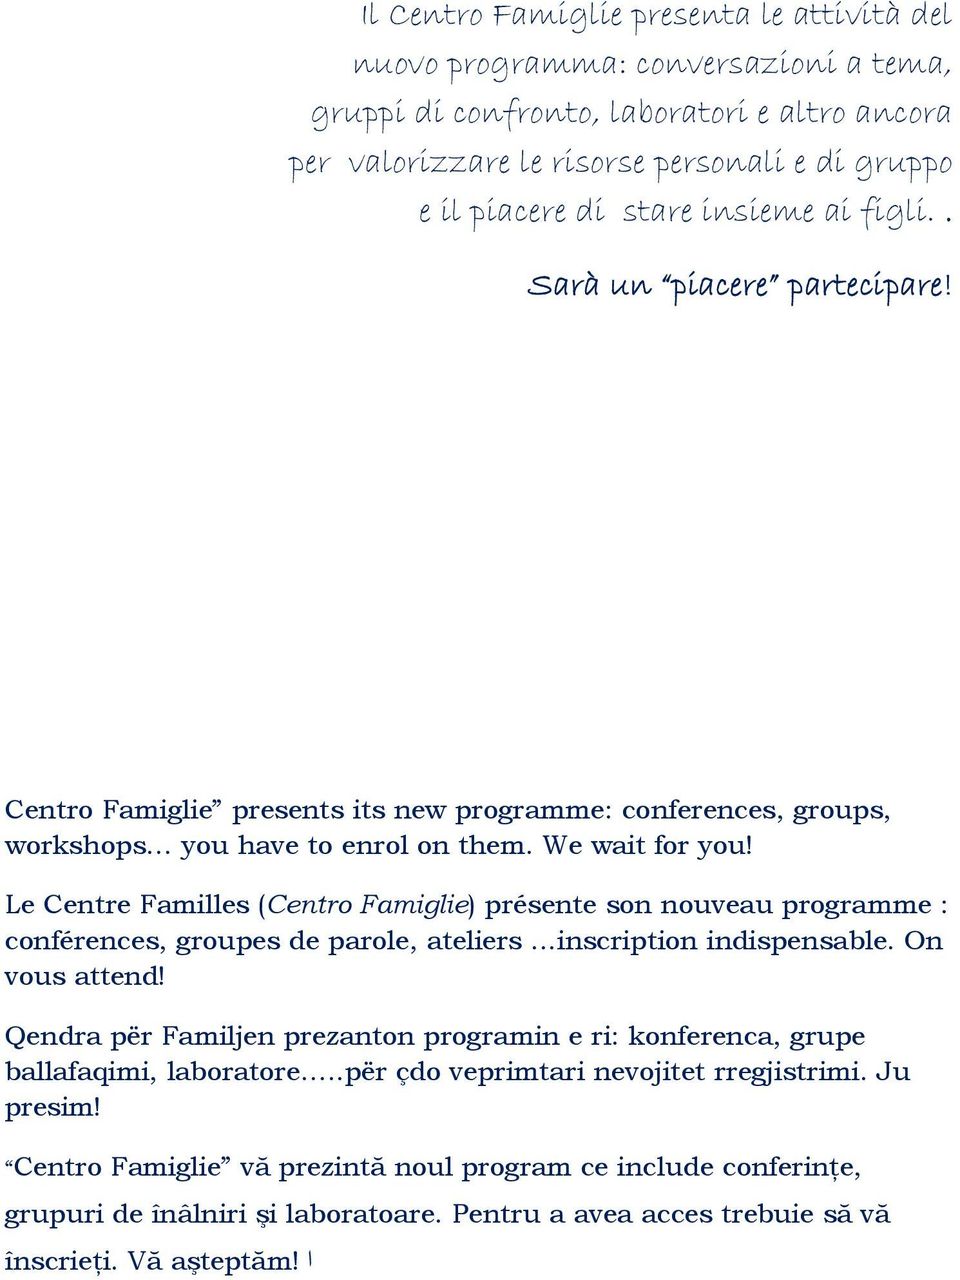 Le Centre Familles (Centro Famiglie) présente son nouveau programme : conférences, groupes de parole, ateliers...inscription indispensable. On vous attend!